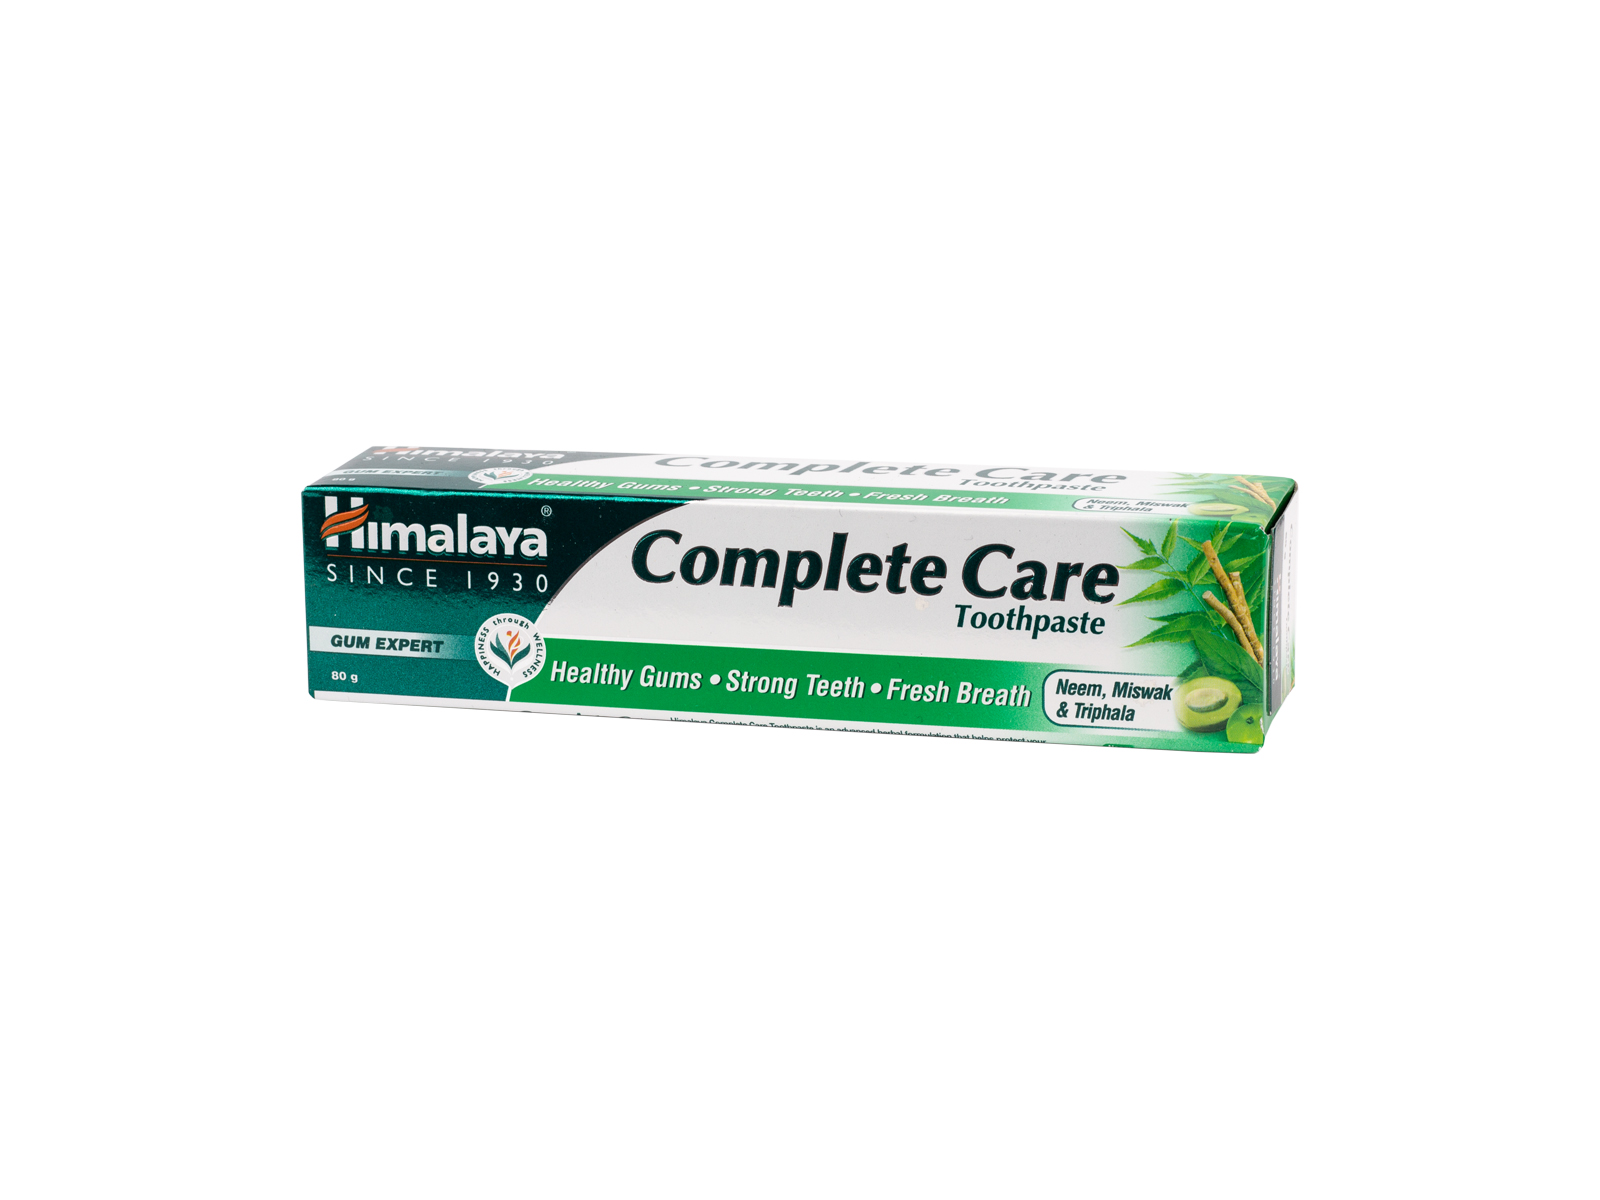 Himalaya Zubní pasta Complete Care, 80 g, 